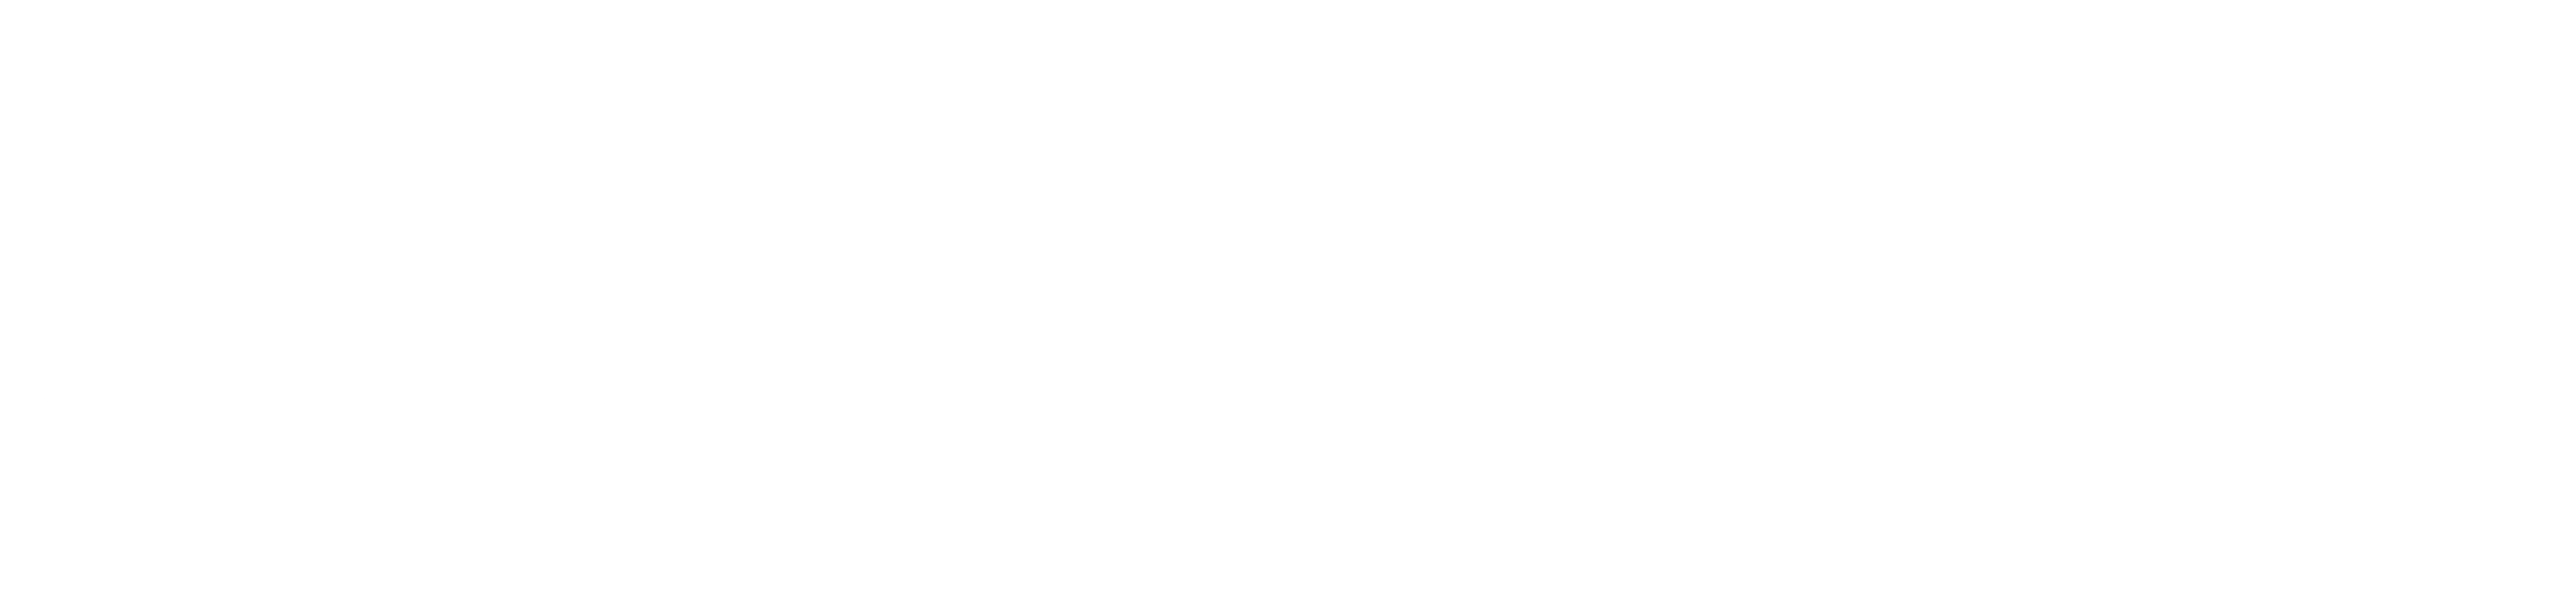 AUDA-NEPAD Logo